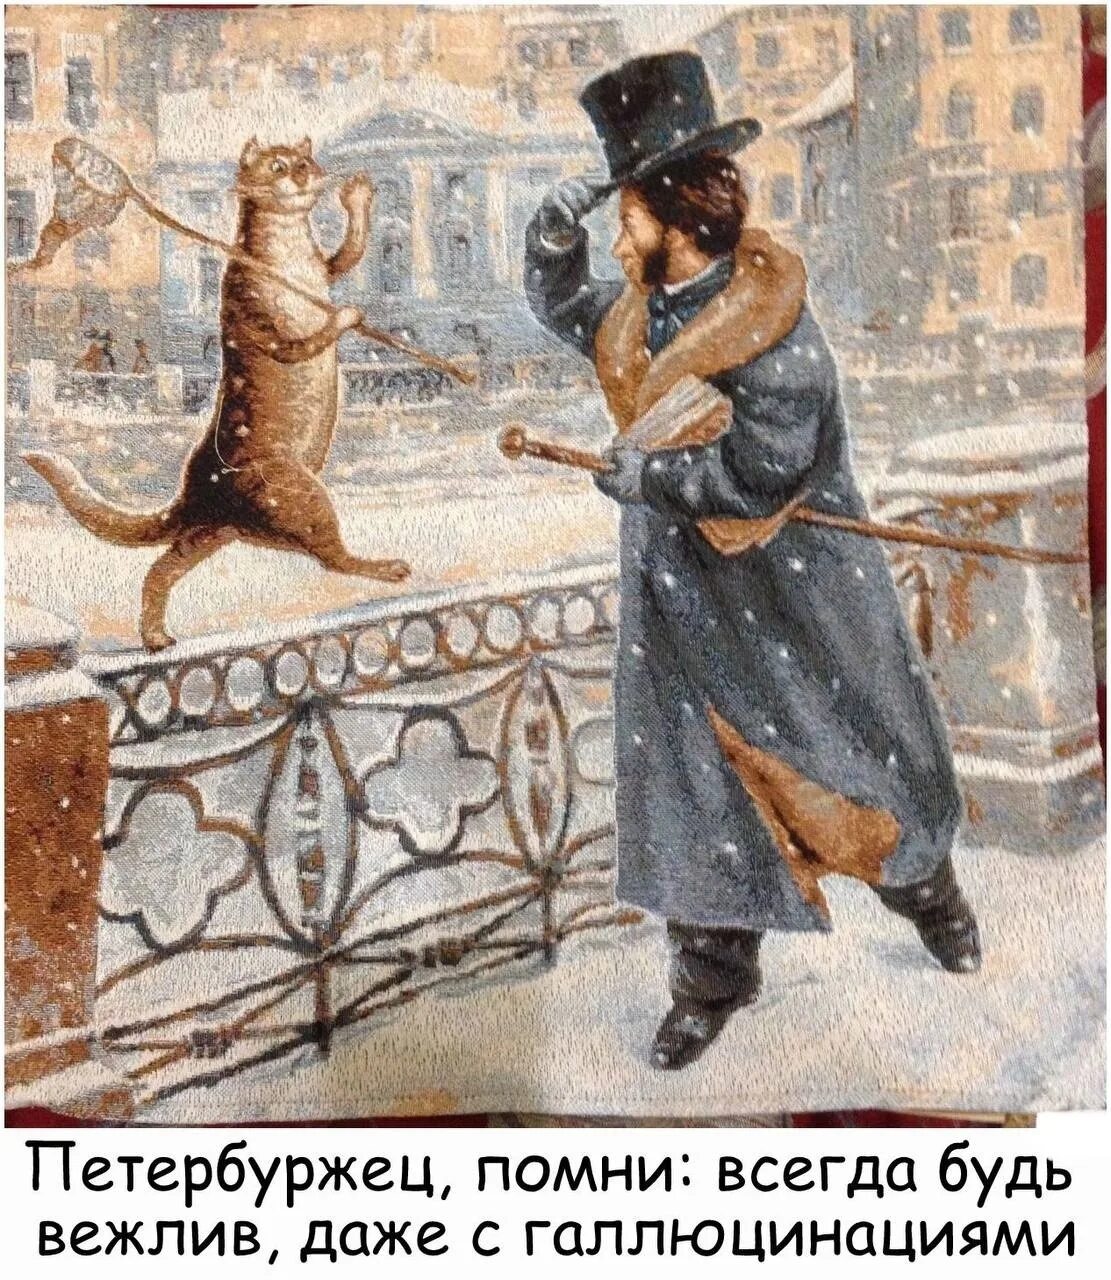 Надо жить припеваючи. Питерские коты Владимира Румянцева с Пушкиным. Румянцев Пушкин и кот. Всегда будь вежлив даже с галлюцинациями.